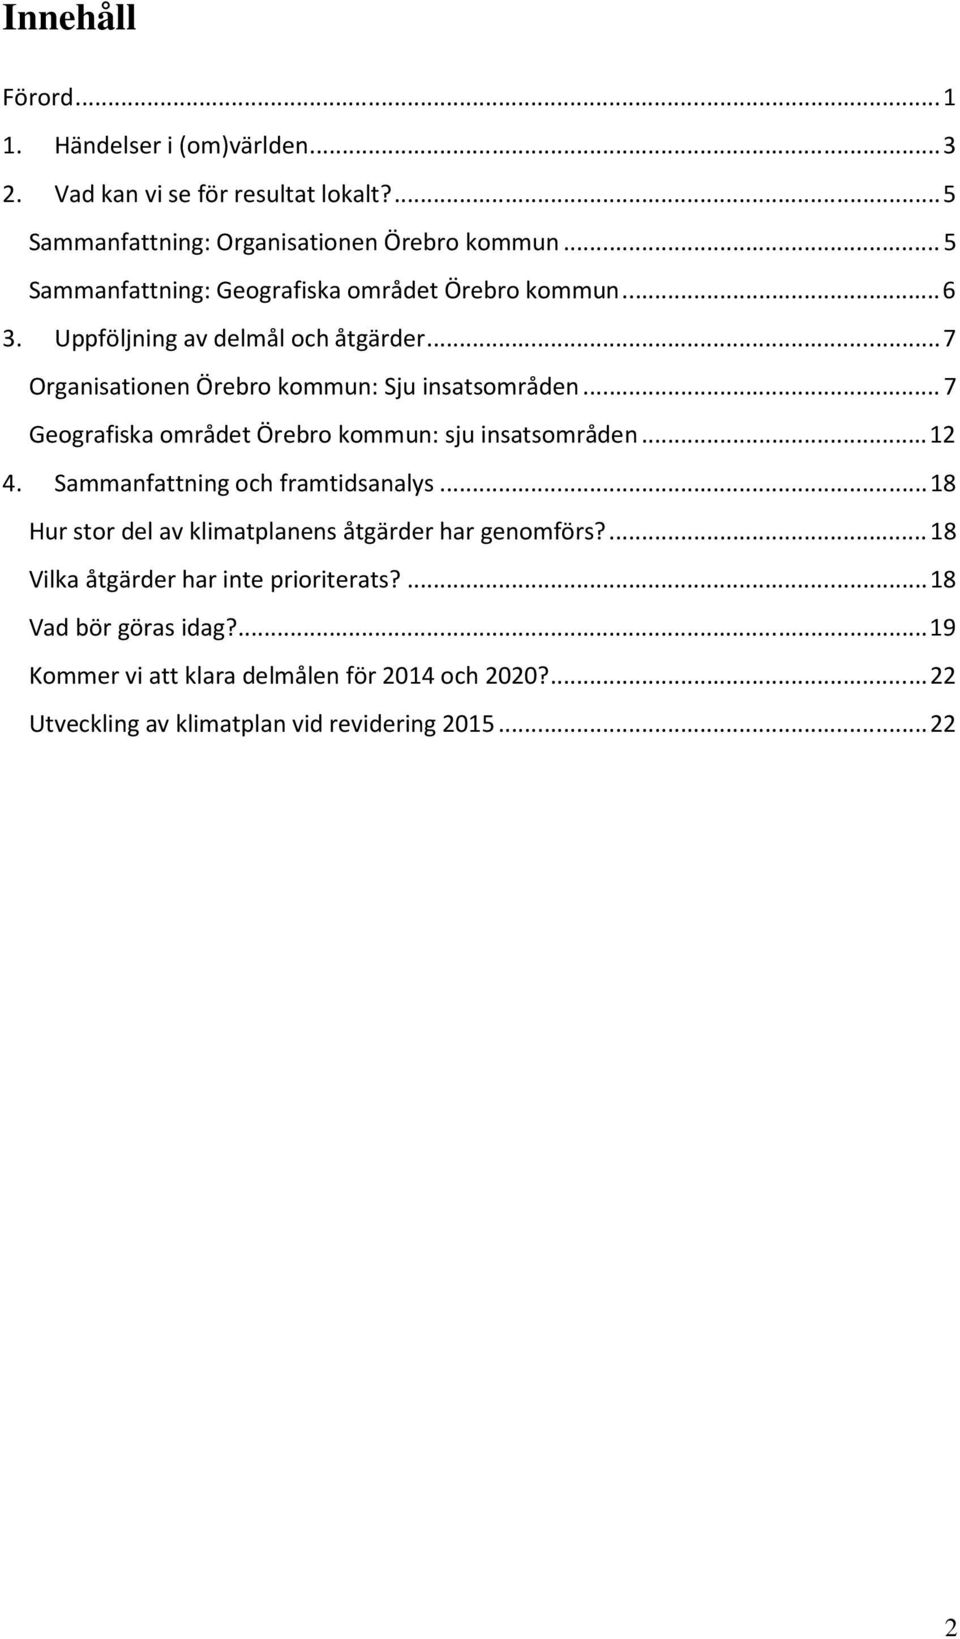 ..7 Geografiska området Örebro kommun: sju insatsområden...12 4. Sammanfattning och framtidsanalys...18 Hur stor del av klimatplanens åtgärder har genomförs?